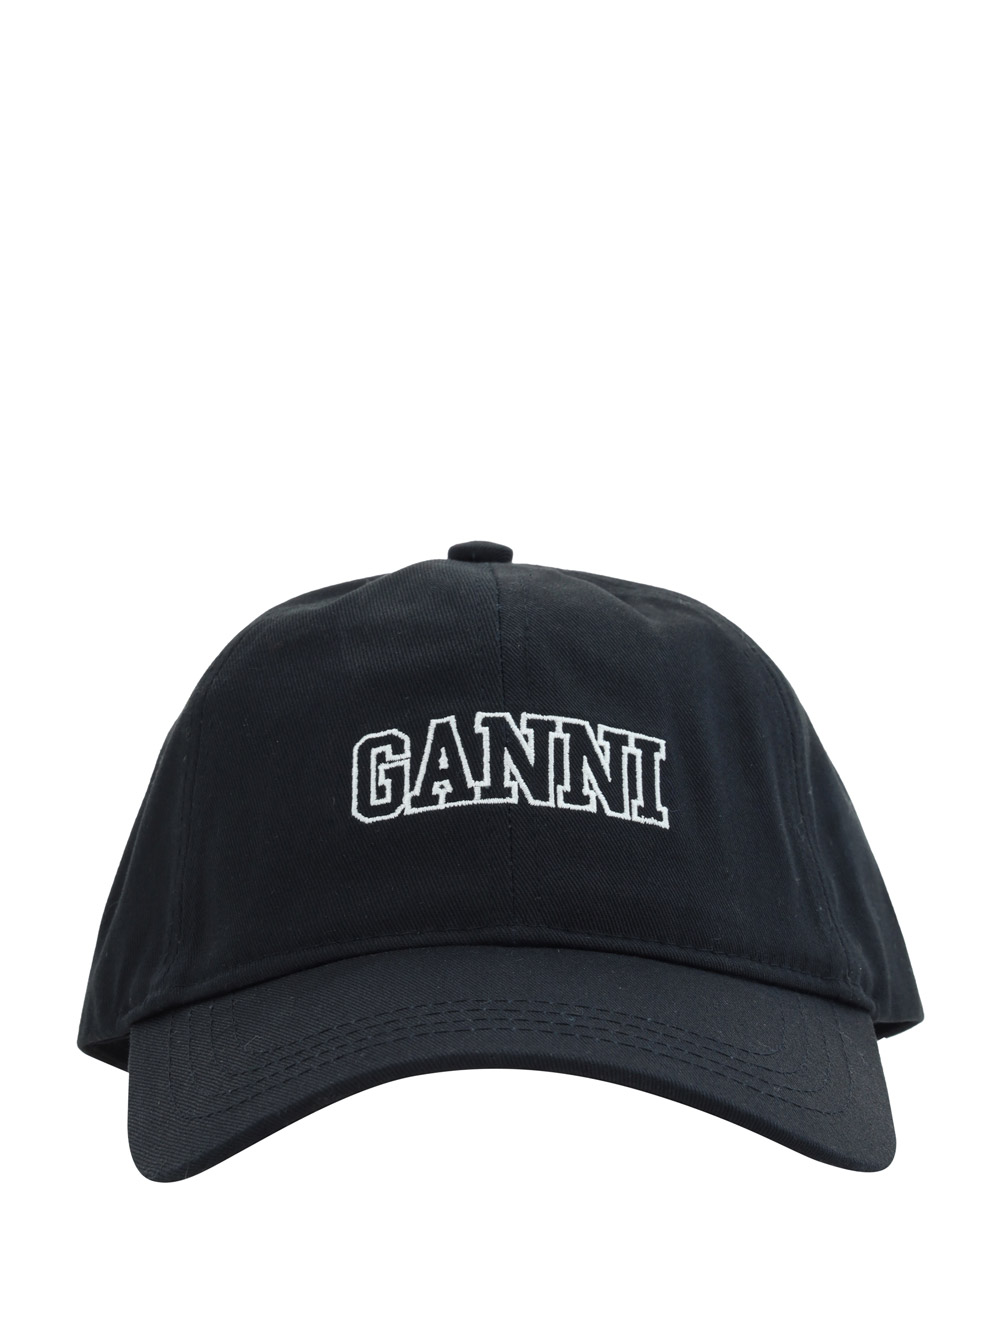 GANNI BASEBALL HAT,A4968_099